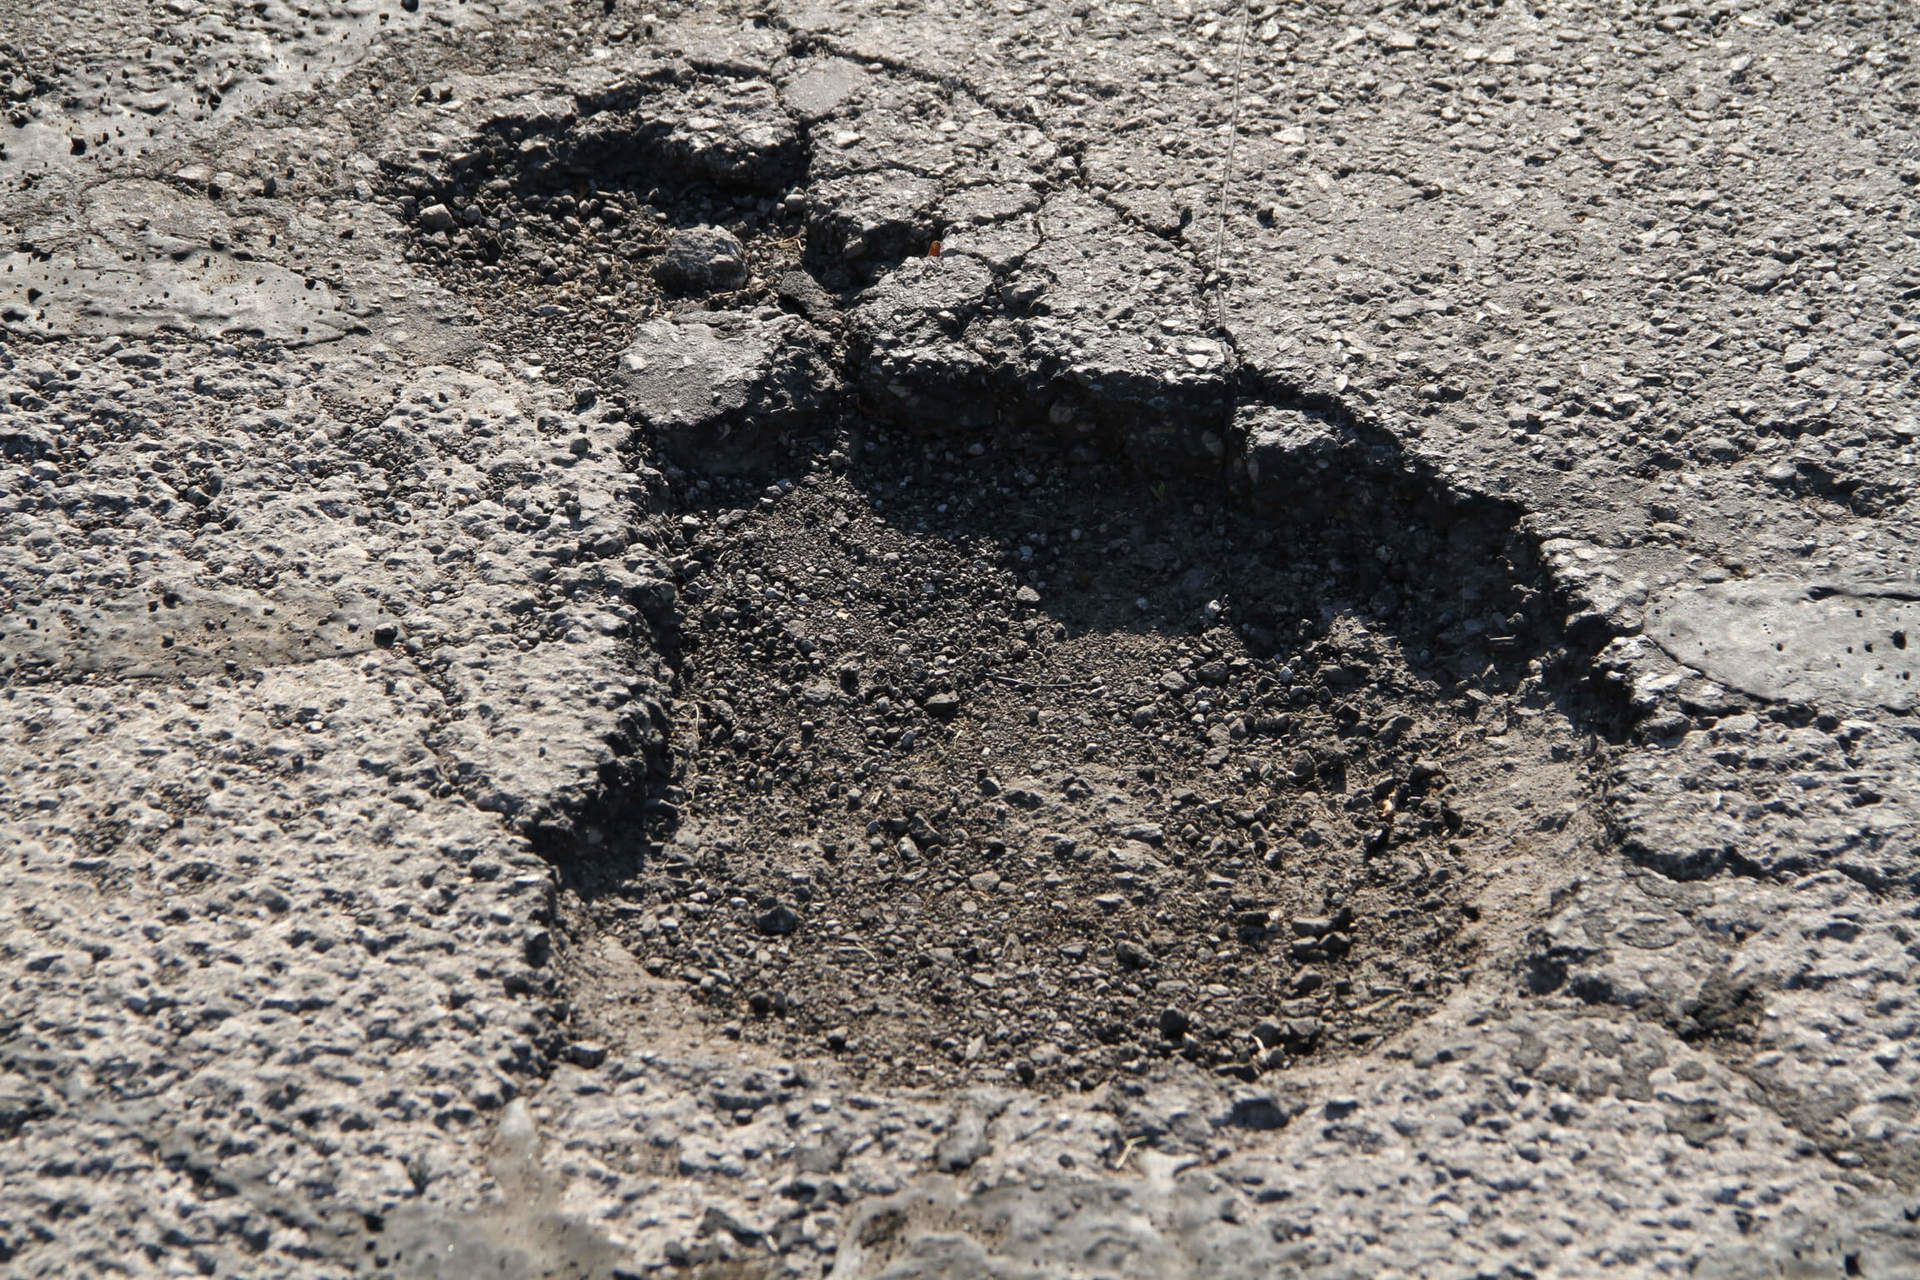 Pothole prior to repair in Fremont, Ohio.